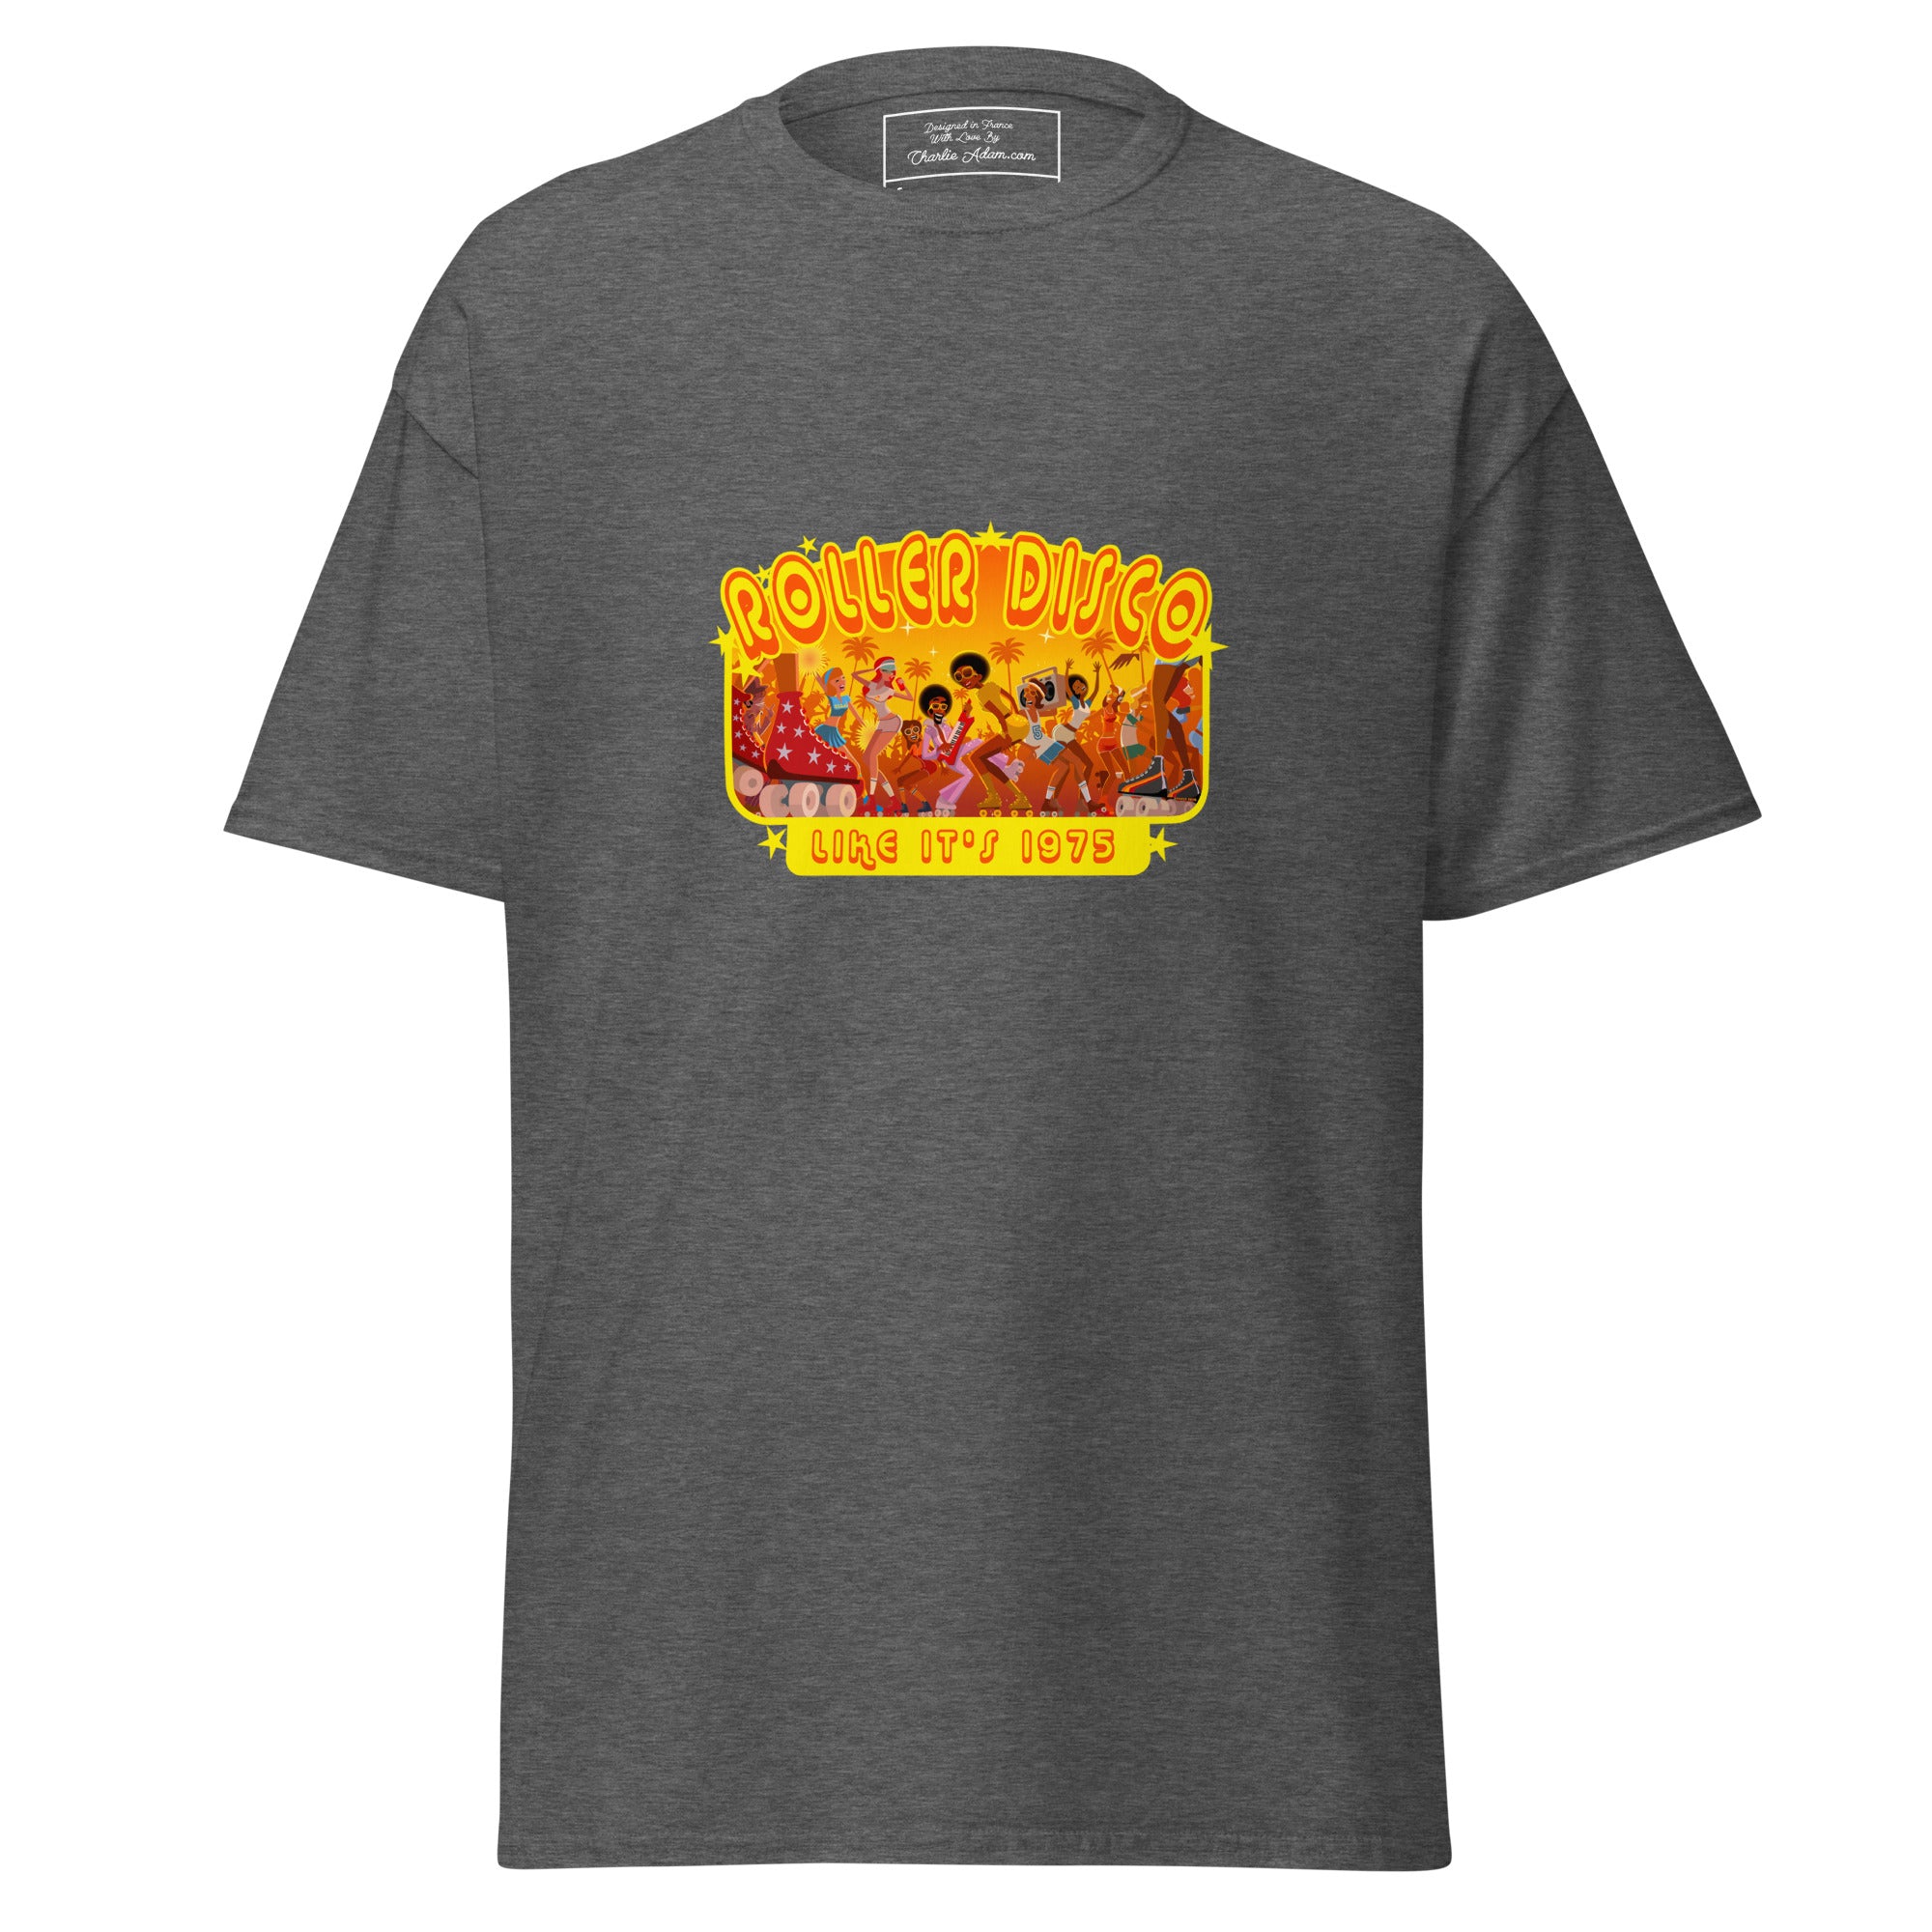 T-shirt classique homme Roller Disco 1975 sur couleurs foncées